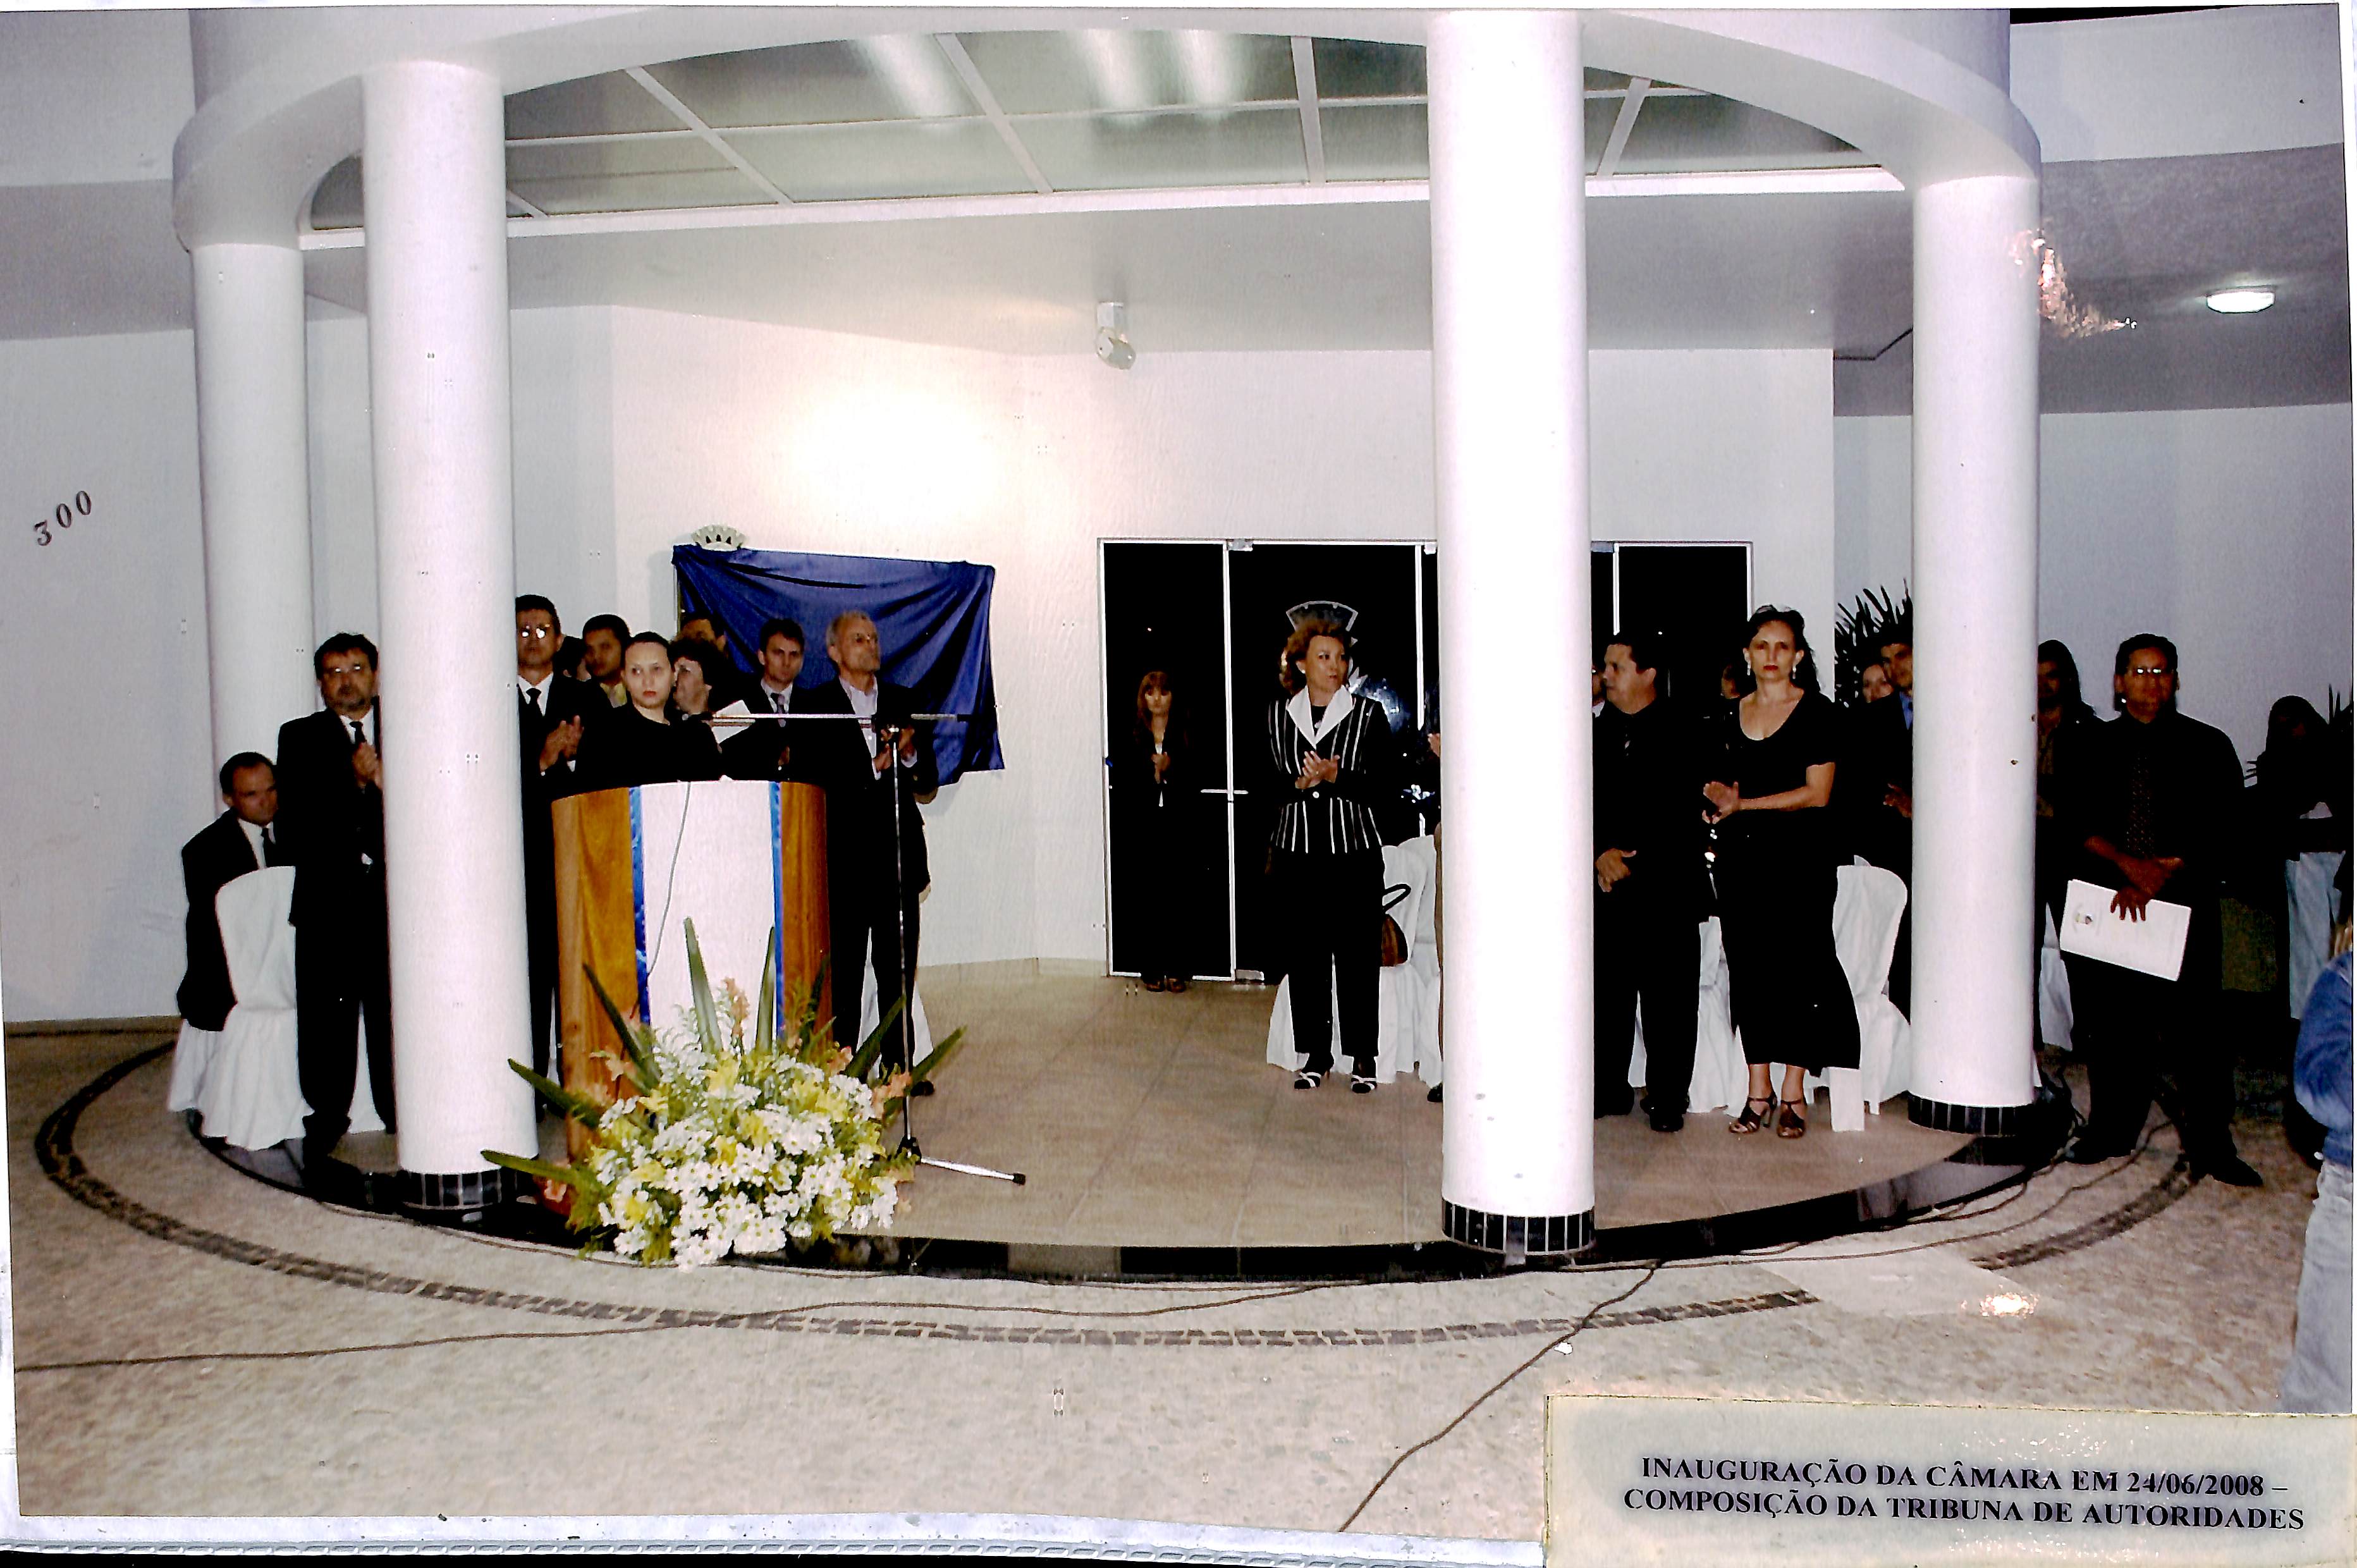 Inauguração da Câmara em 24/06/2008 - Composição da Tribuna de Autoridades